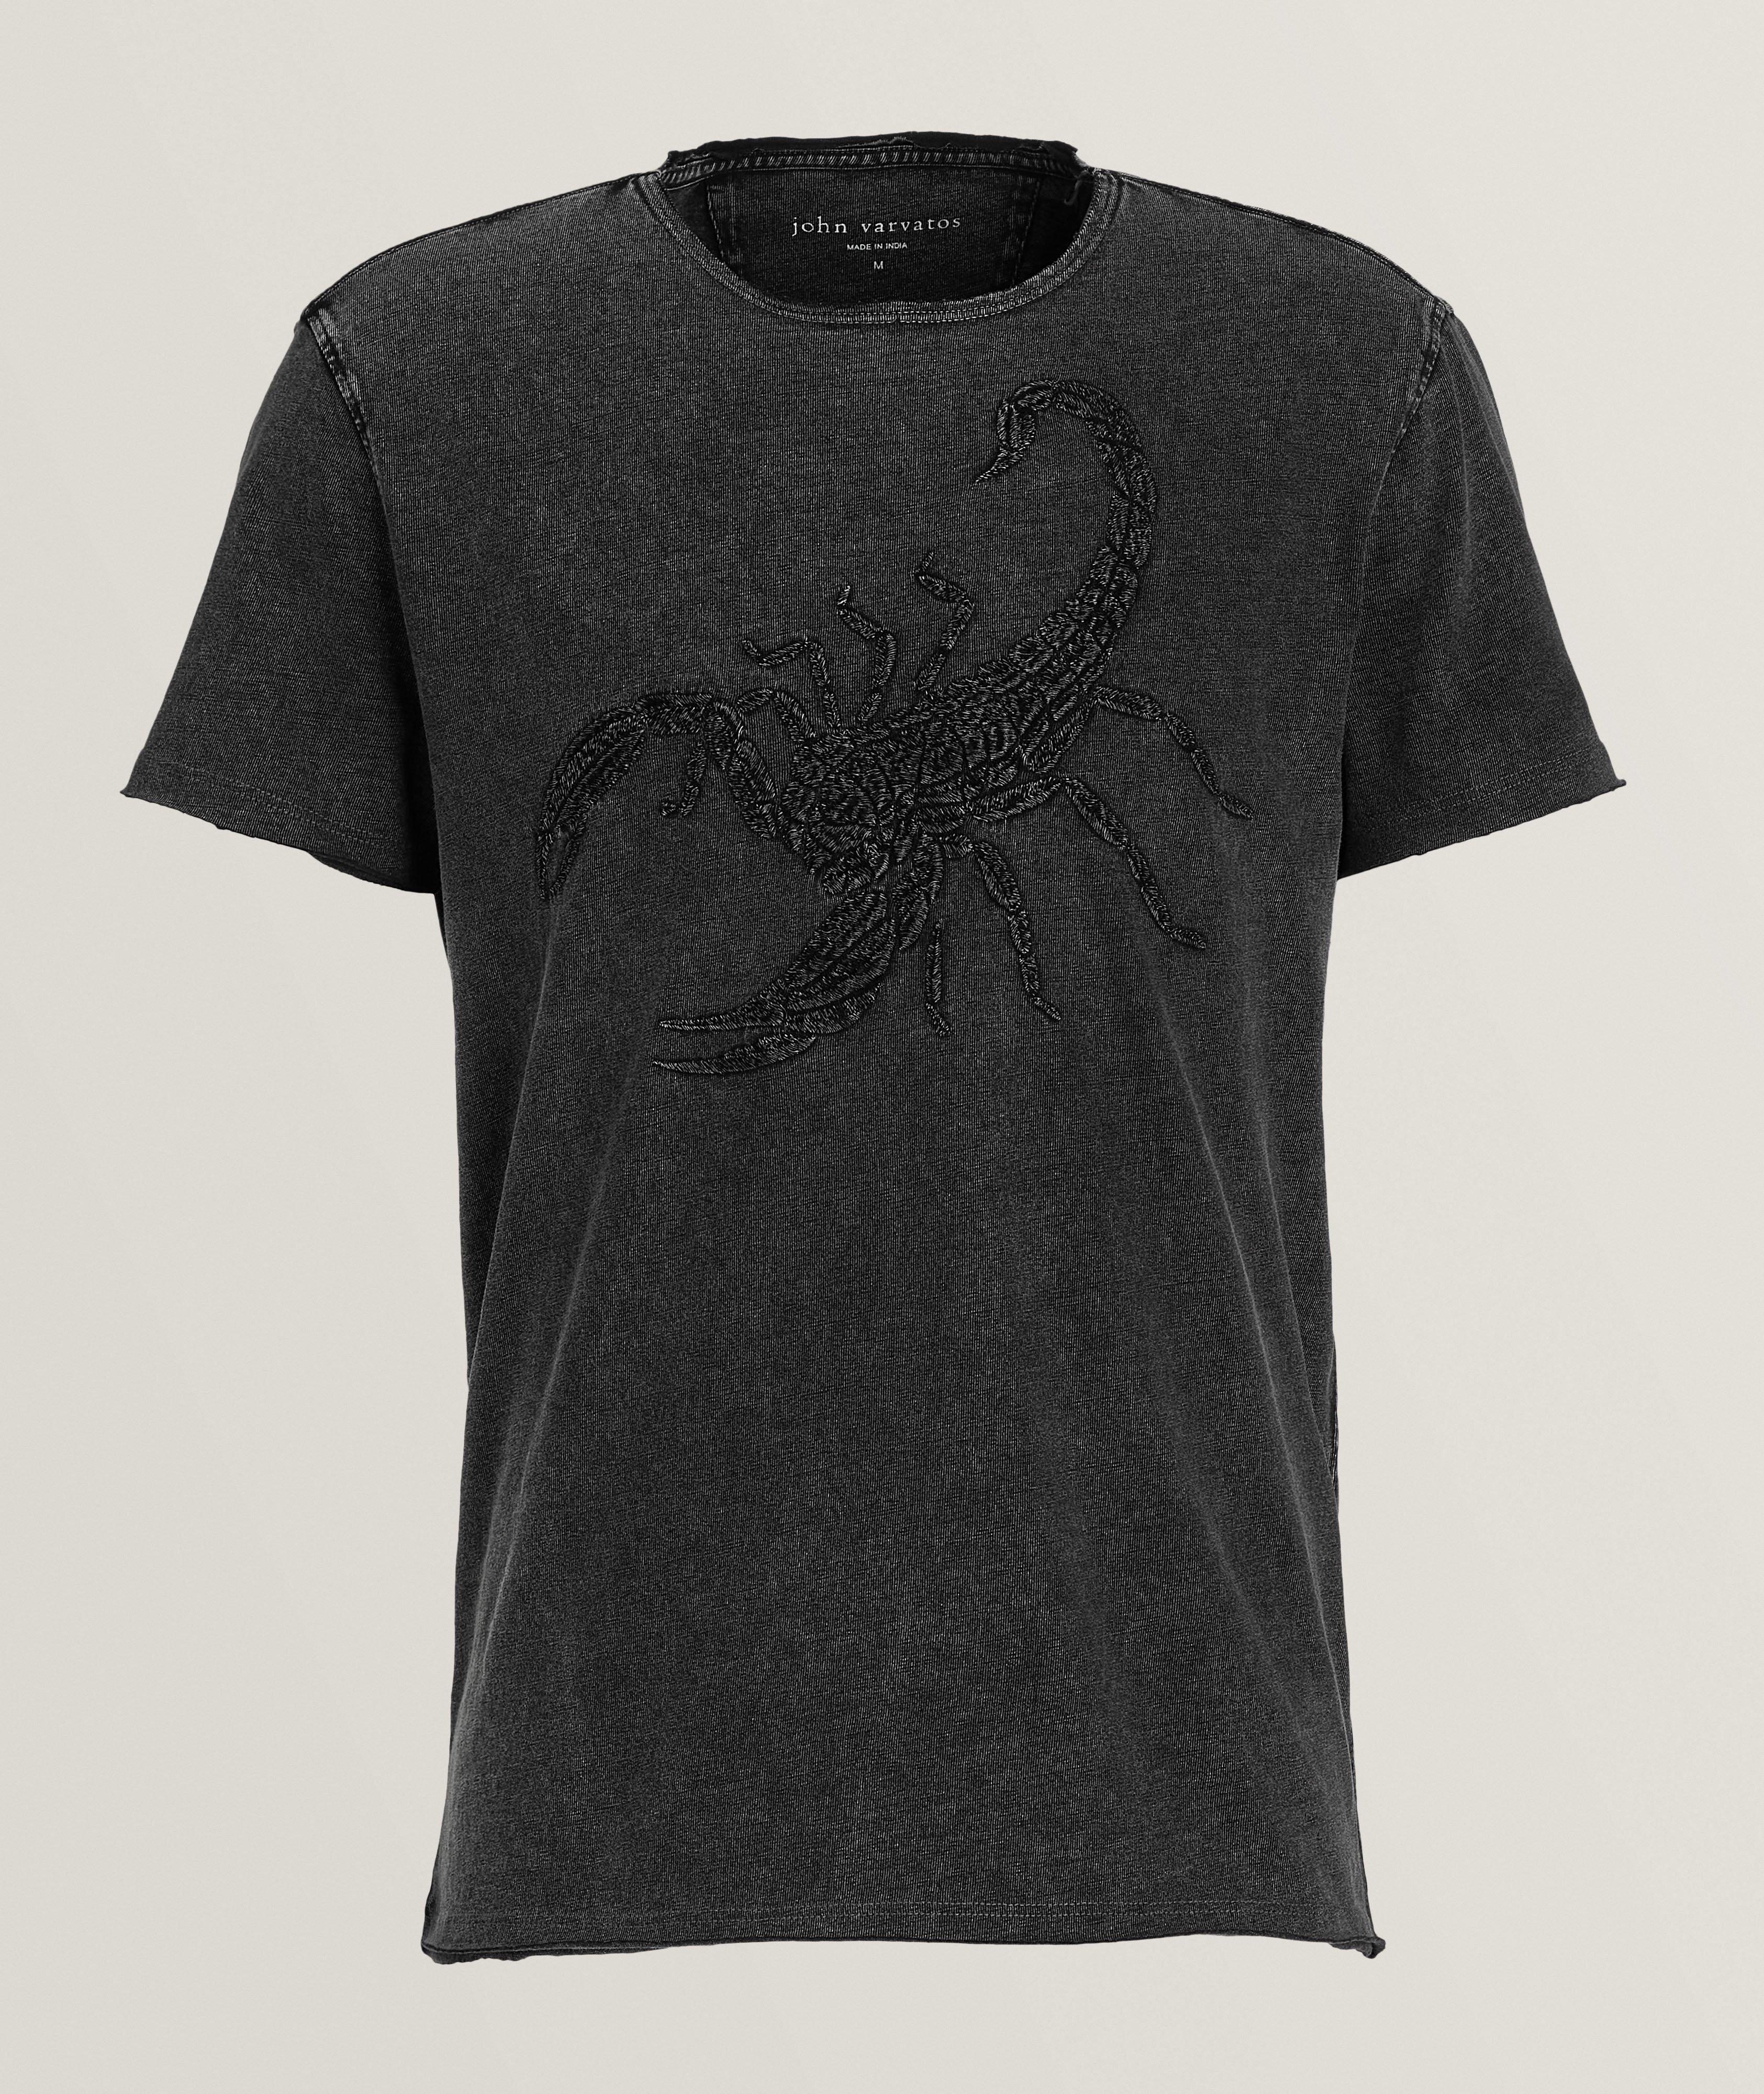 T-shirt en coton avec scorpion brodé image 0